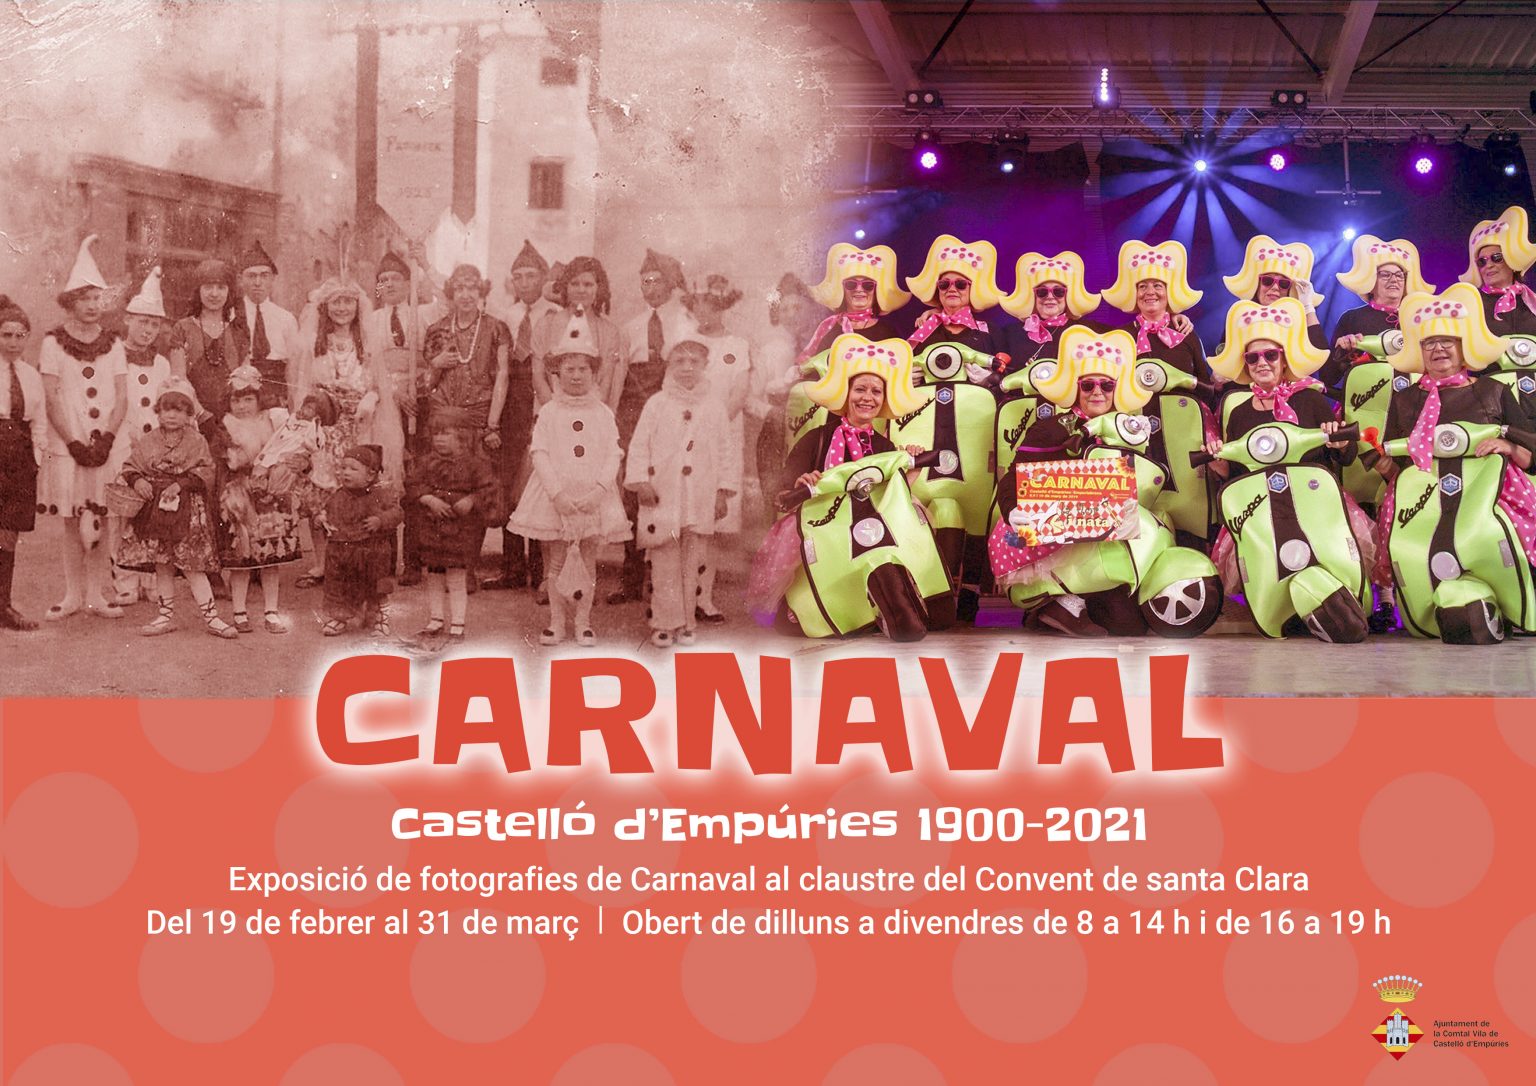 Castelló d’Empúries commemora el Carnaval amb una exposició de fotos antigues